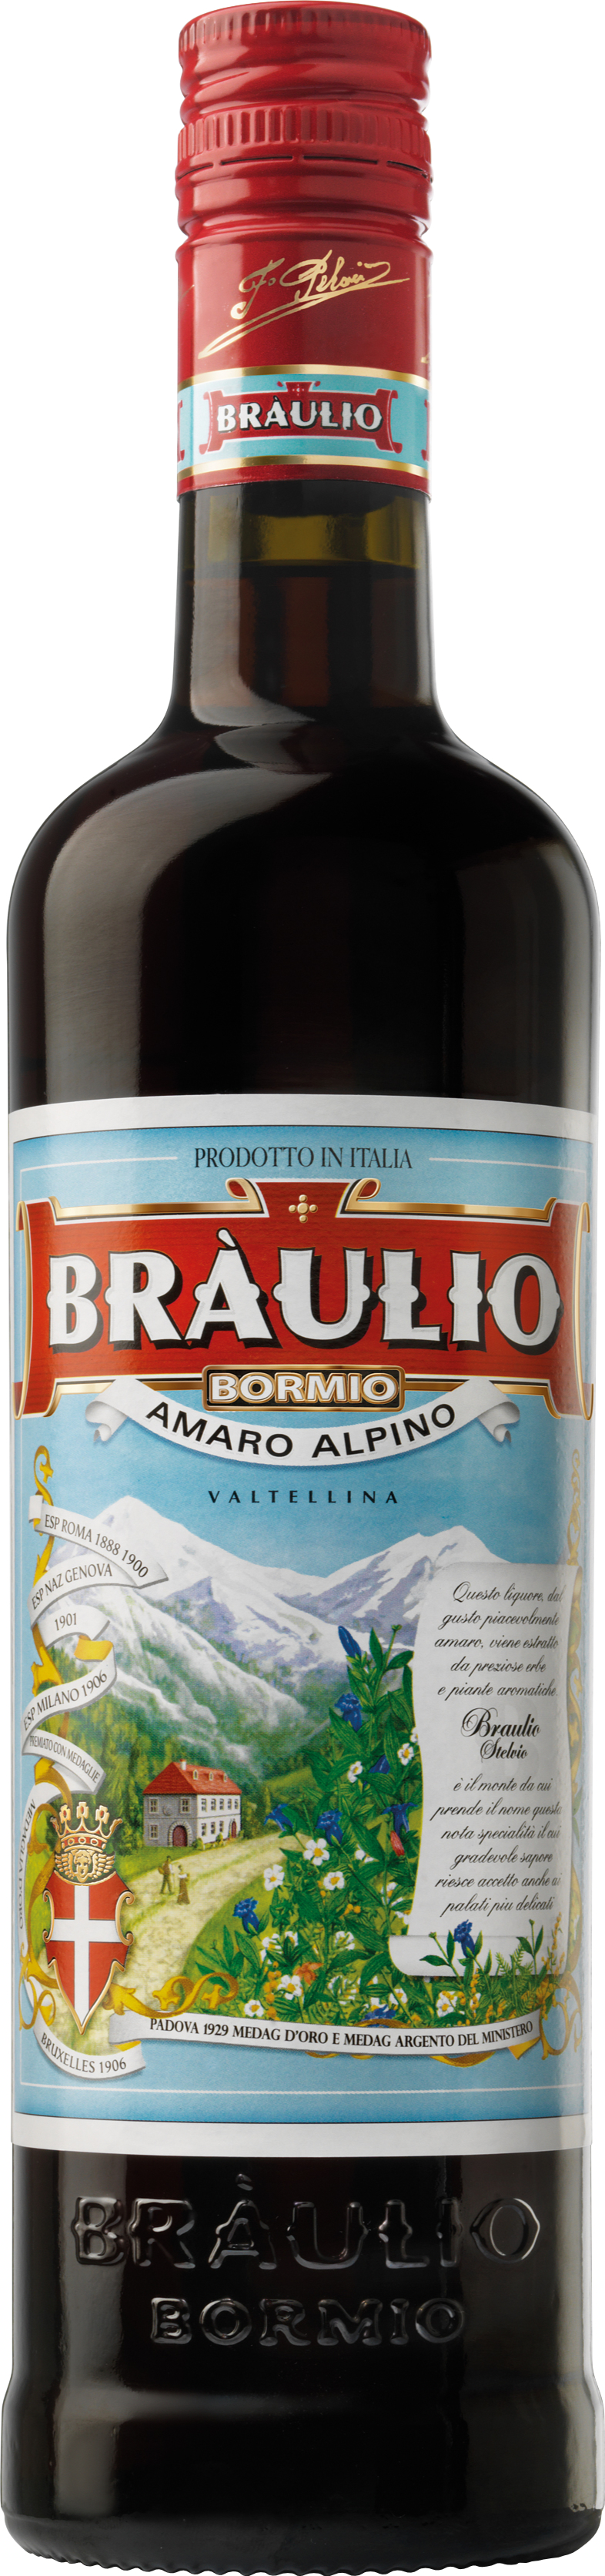 Braulio Amaro Alpino 21 % 0,7L